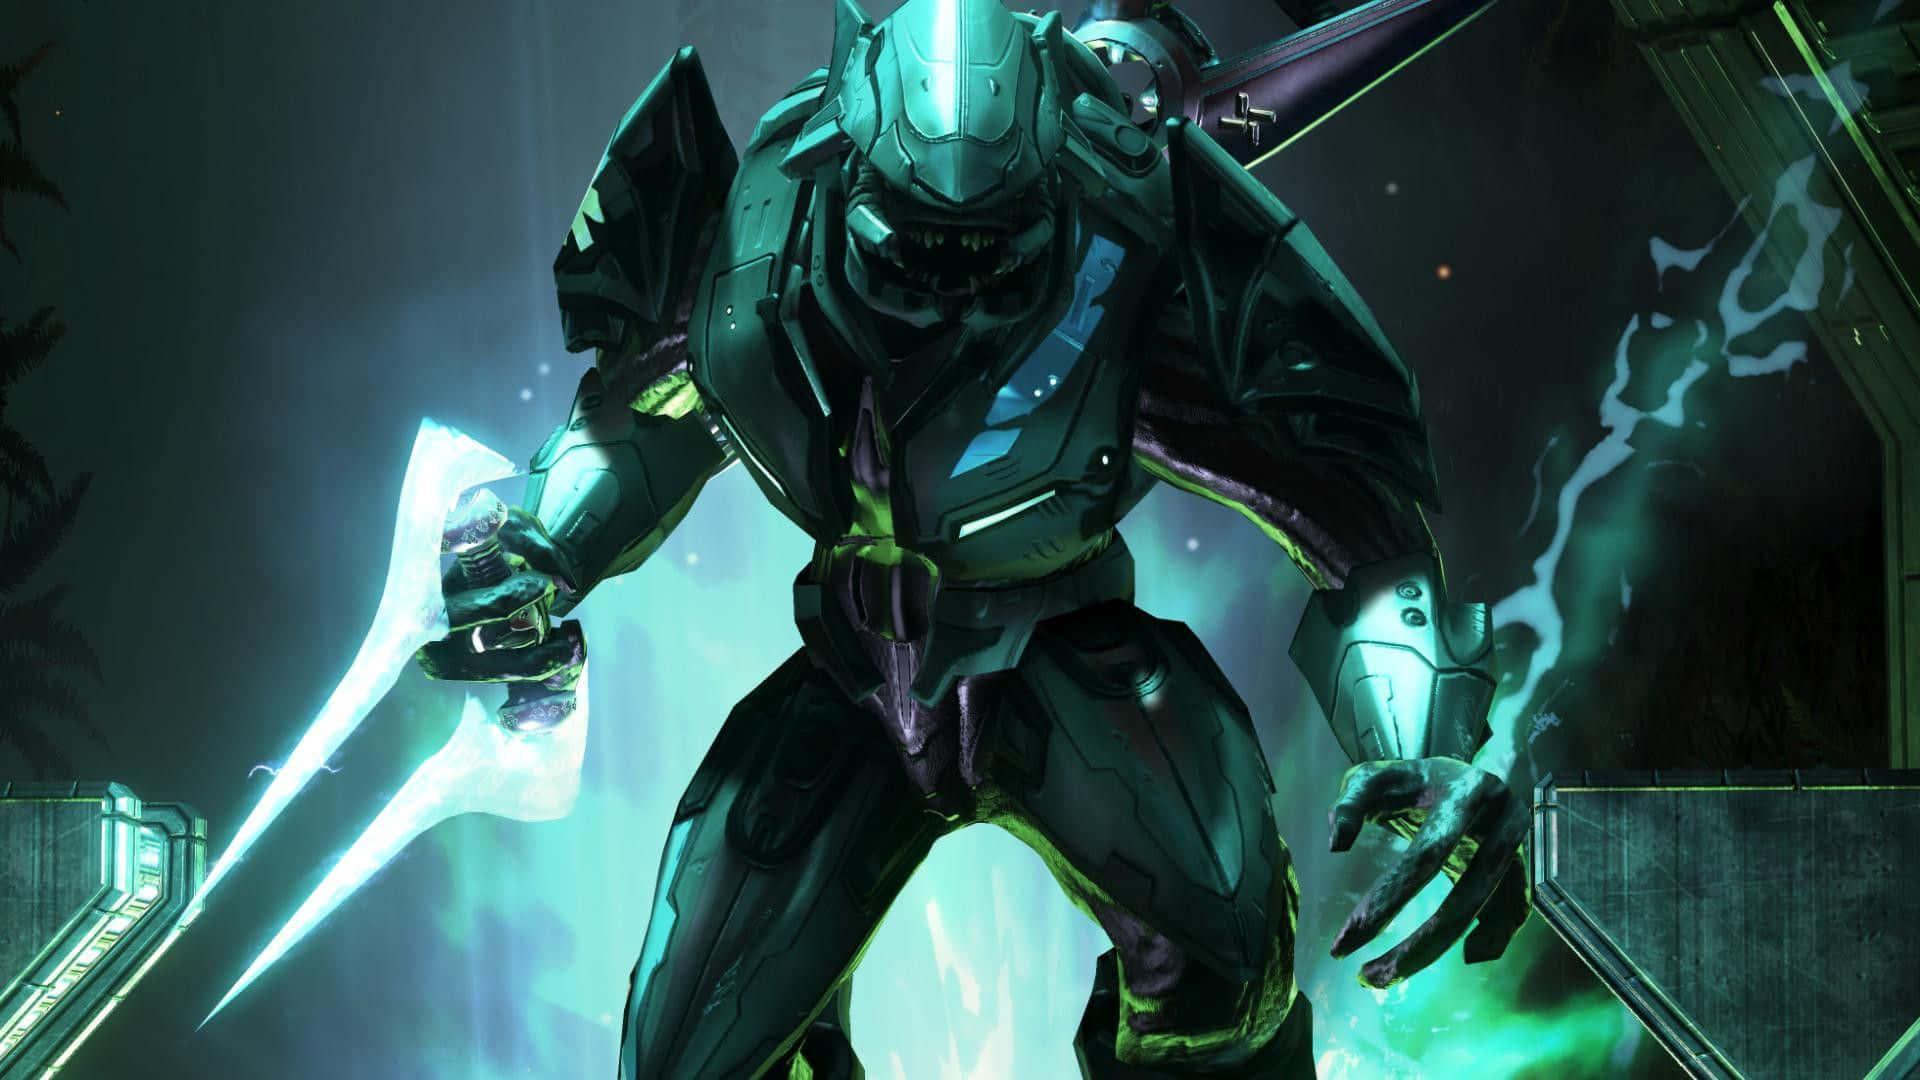 The Legendary Halo Arbiter in Battle Wallpaper